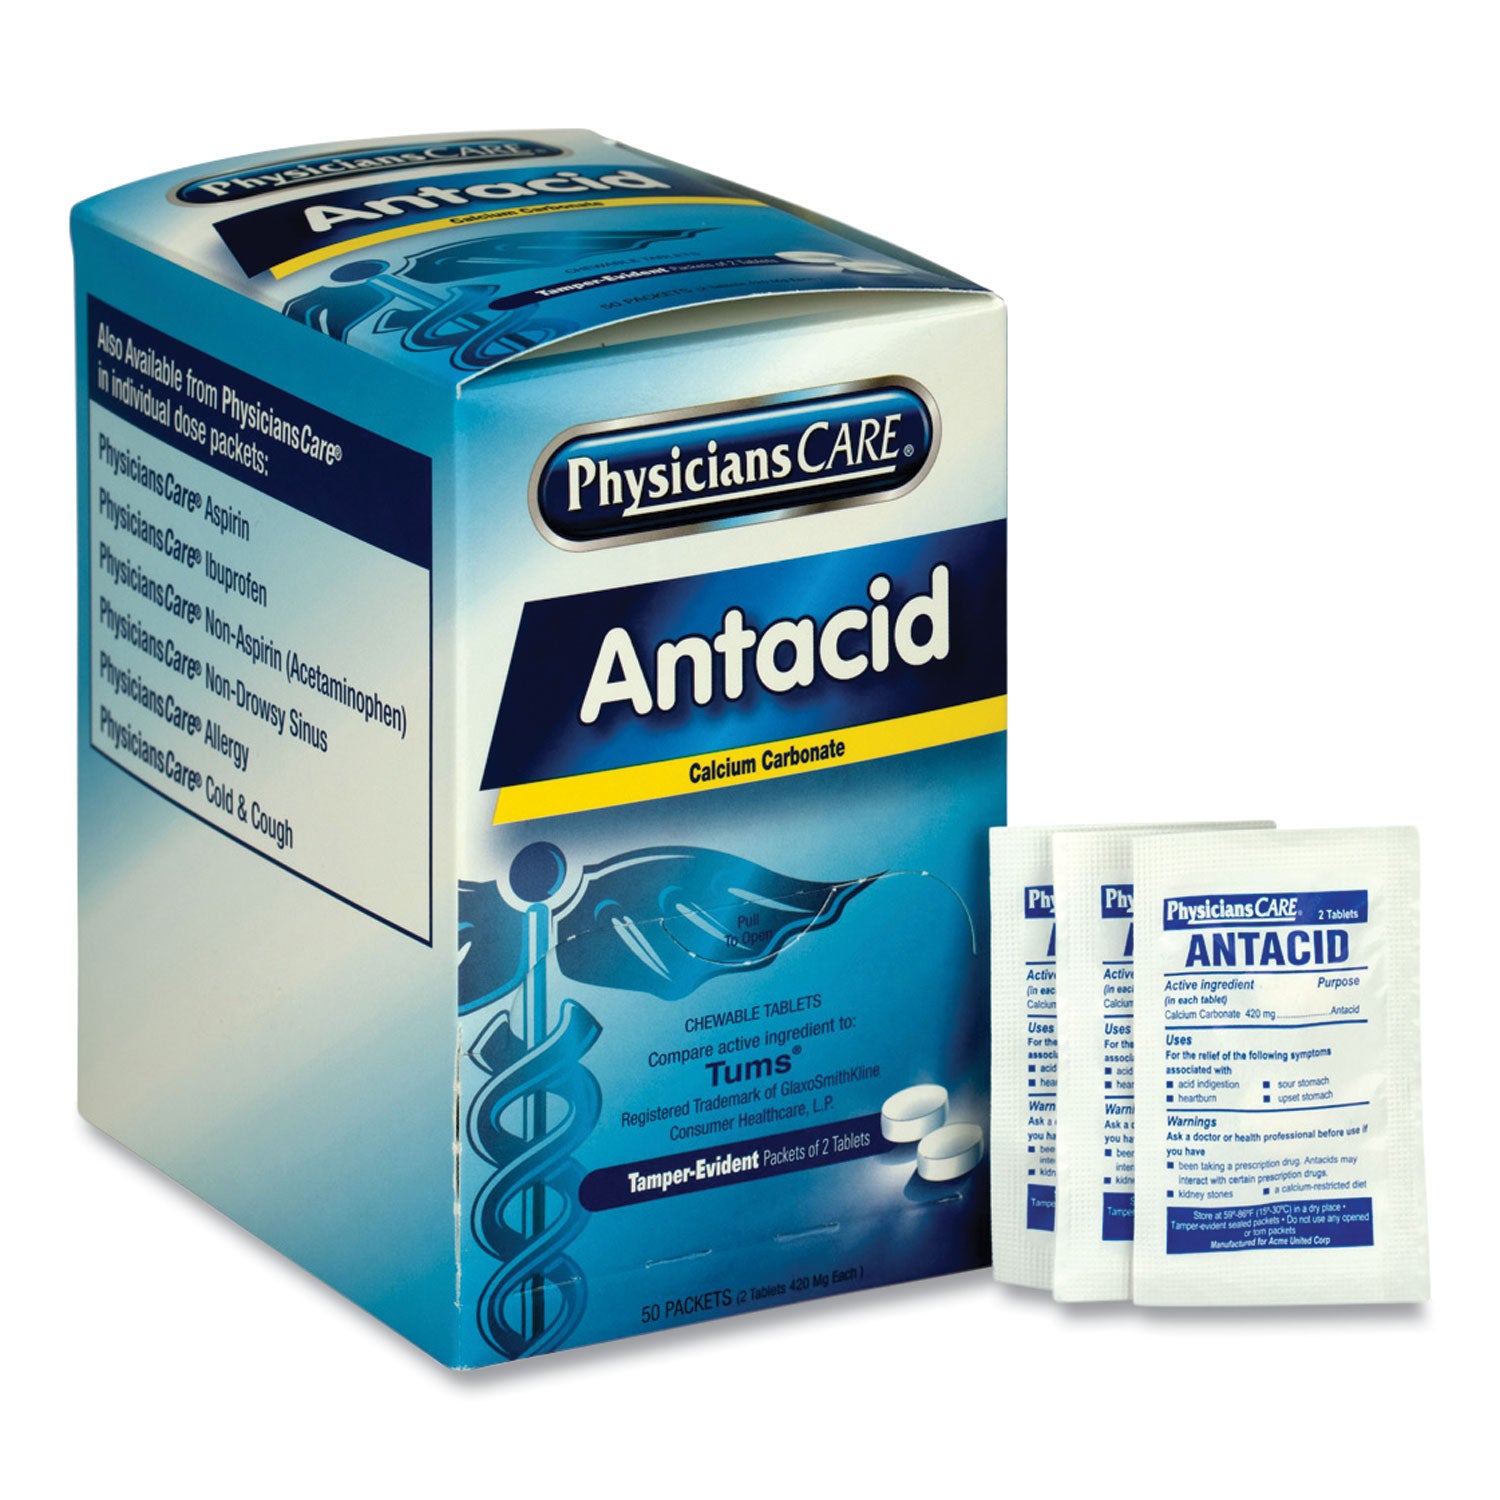 antacid-calcium-carbonate-medication-two-pack-50-packs-box_acm90089 - 1